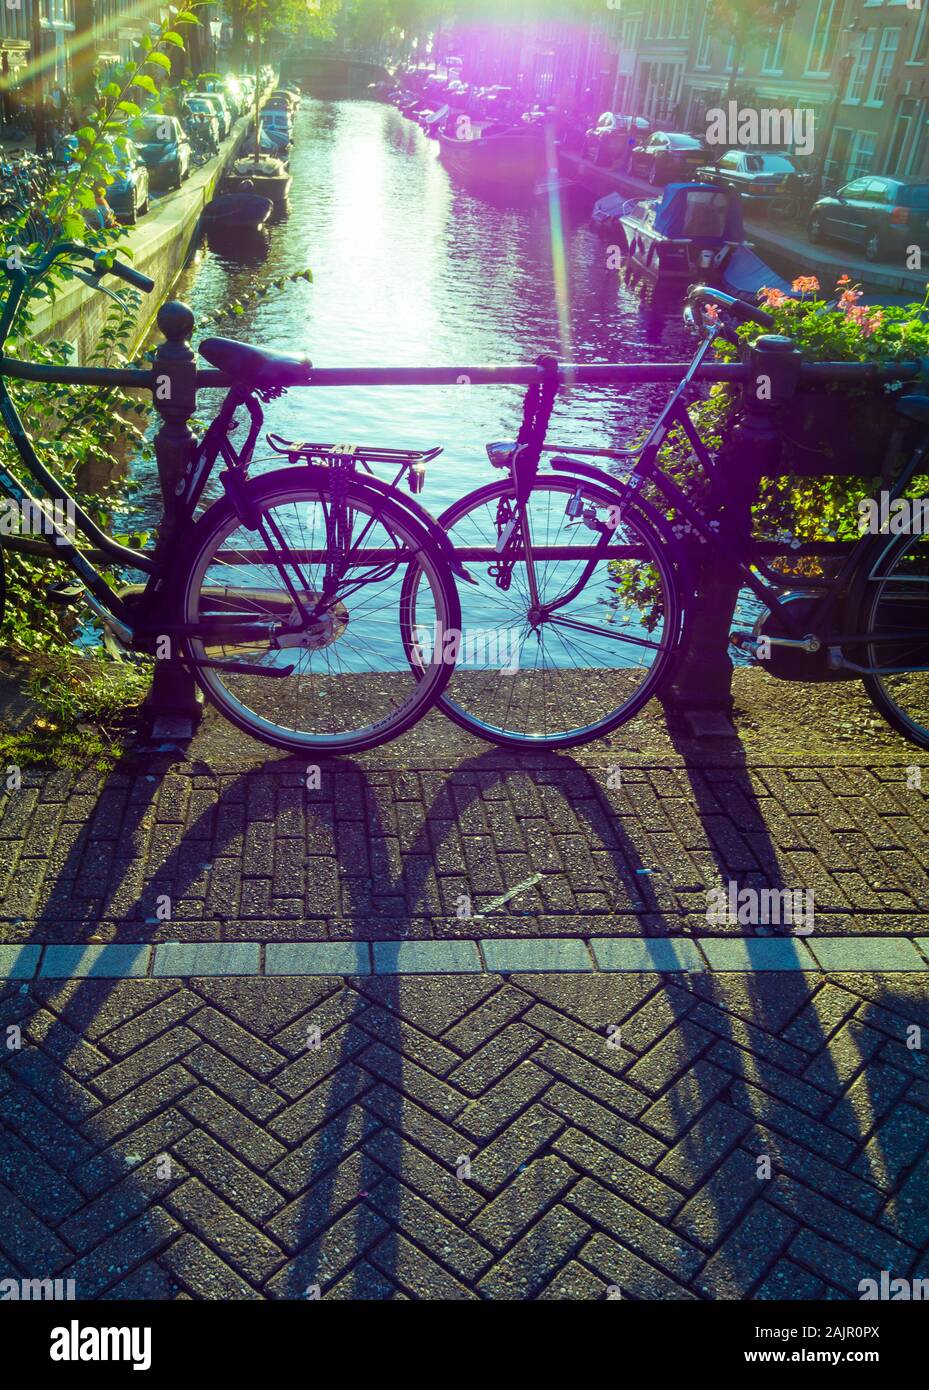 Fuera de la imagen en color de estacionar bicicletas en el puente del canal de Amsterdam, en el antiguo barrio Jordaan (Egelantiersgracht). Polaroid Vintage estilo de color, los brillos de la lente. Foto de stock